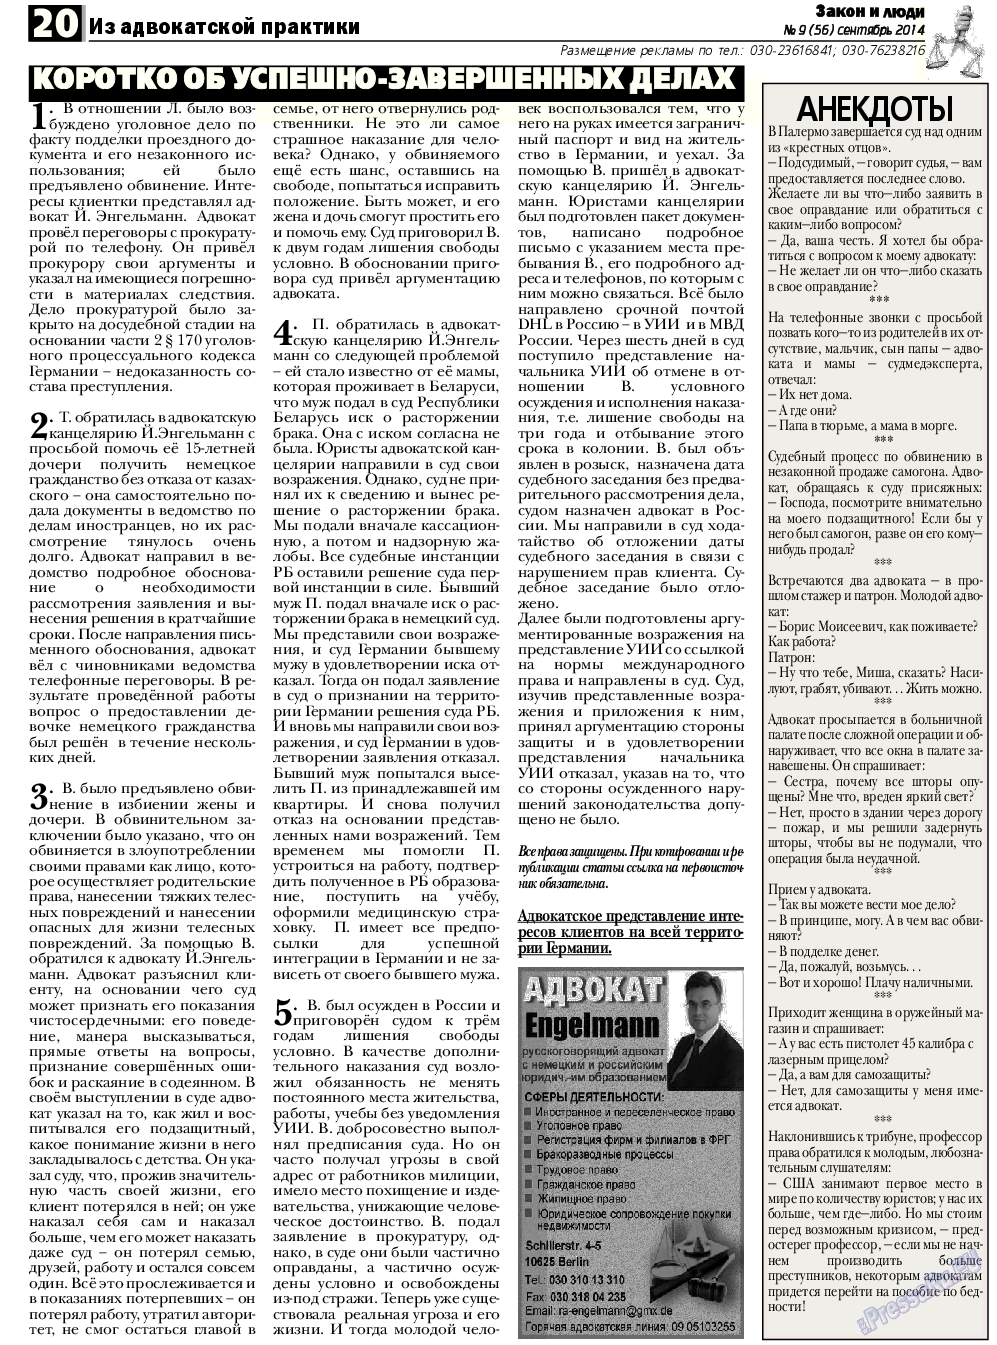 Закон и люди, газета. 2014 №9 стр.20